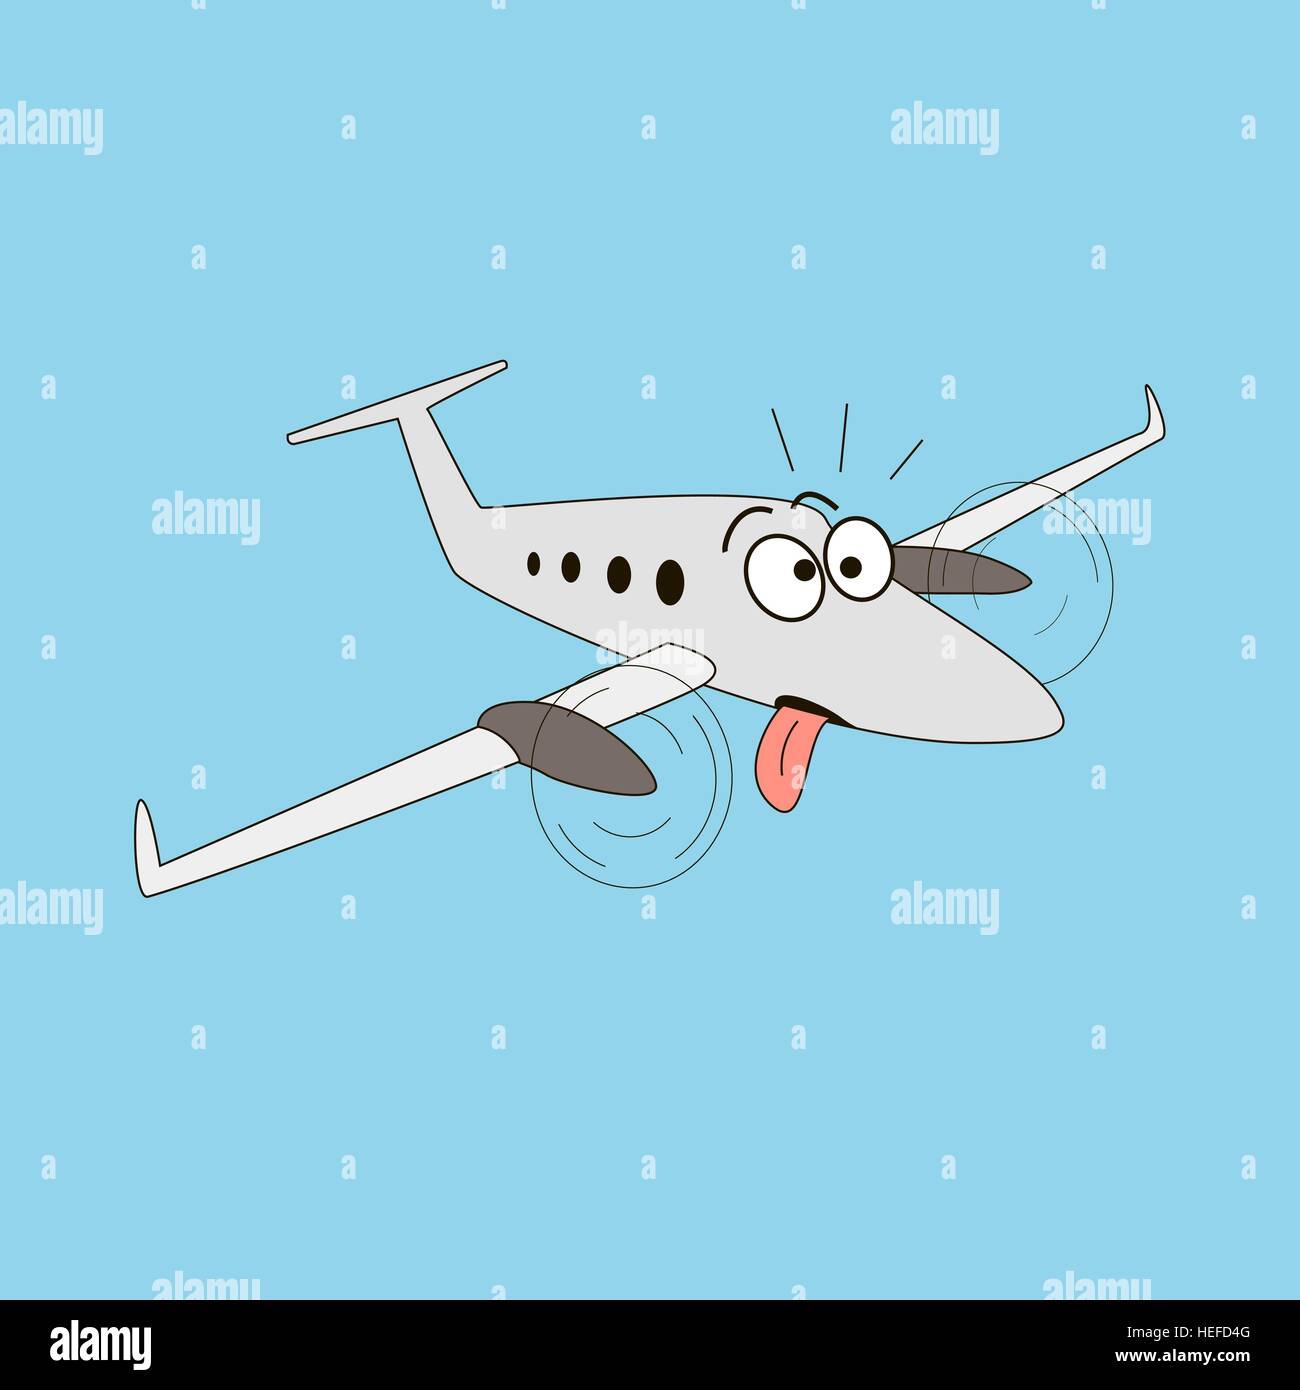 Estilo de dibujos animados con el avión rodando los ojos y la lengua que sobresale. Ilustración del Vector